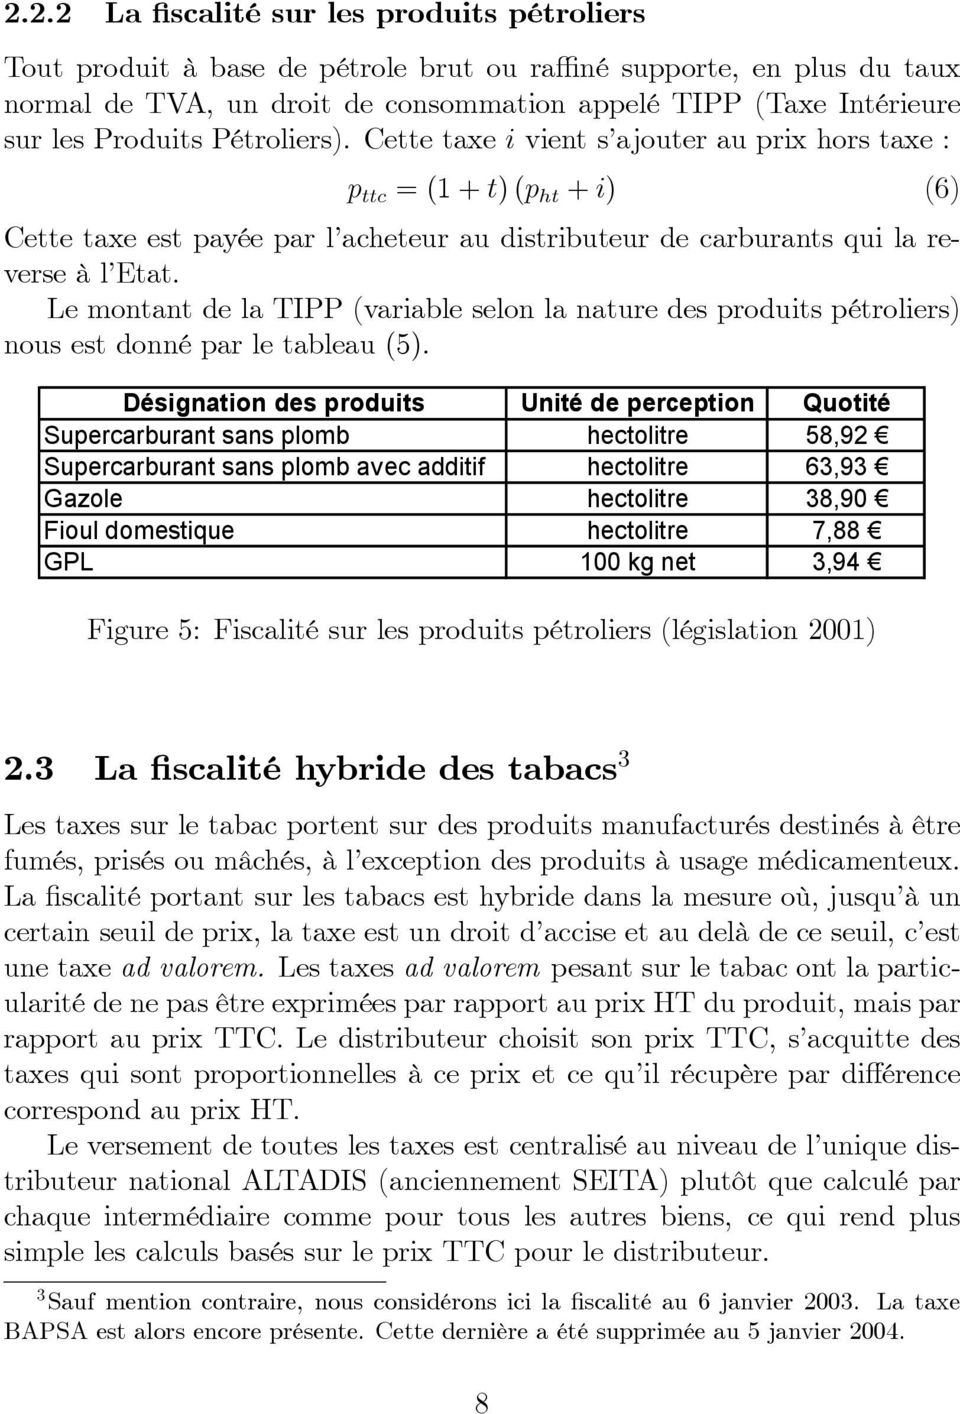 Le montant de la TIPP (variable selon la nature des produits pétroliers) nous est donné par le tableau (5).